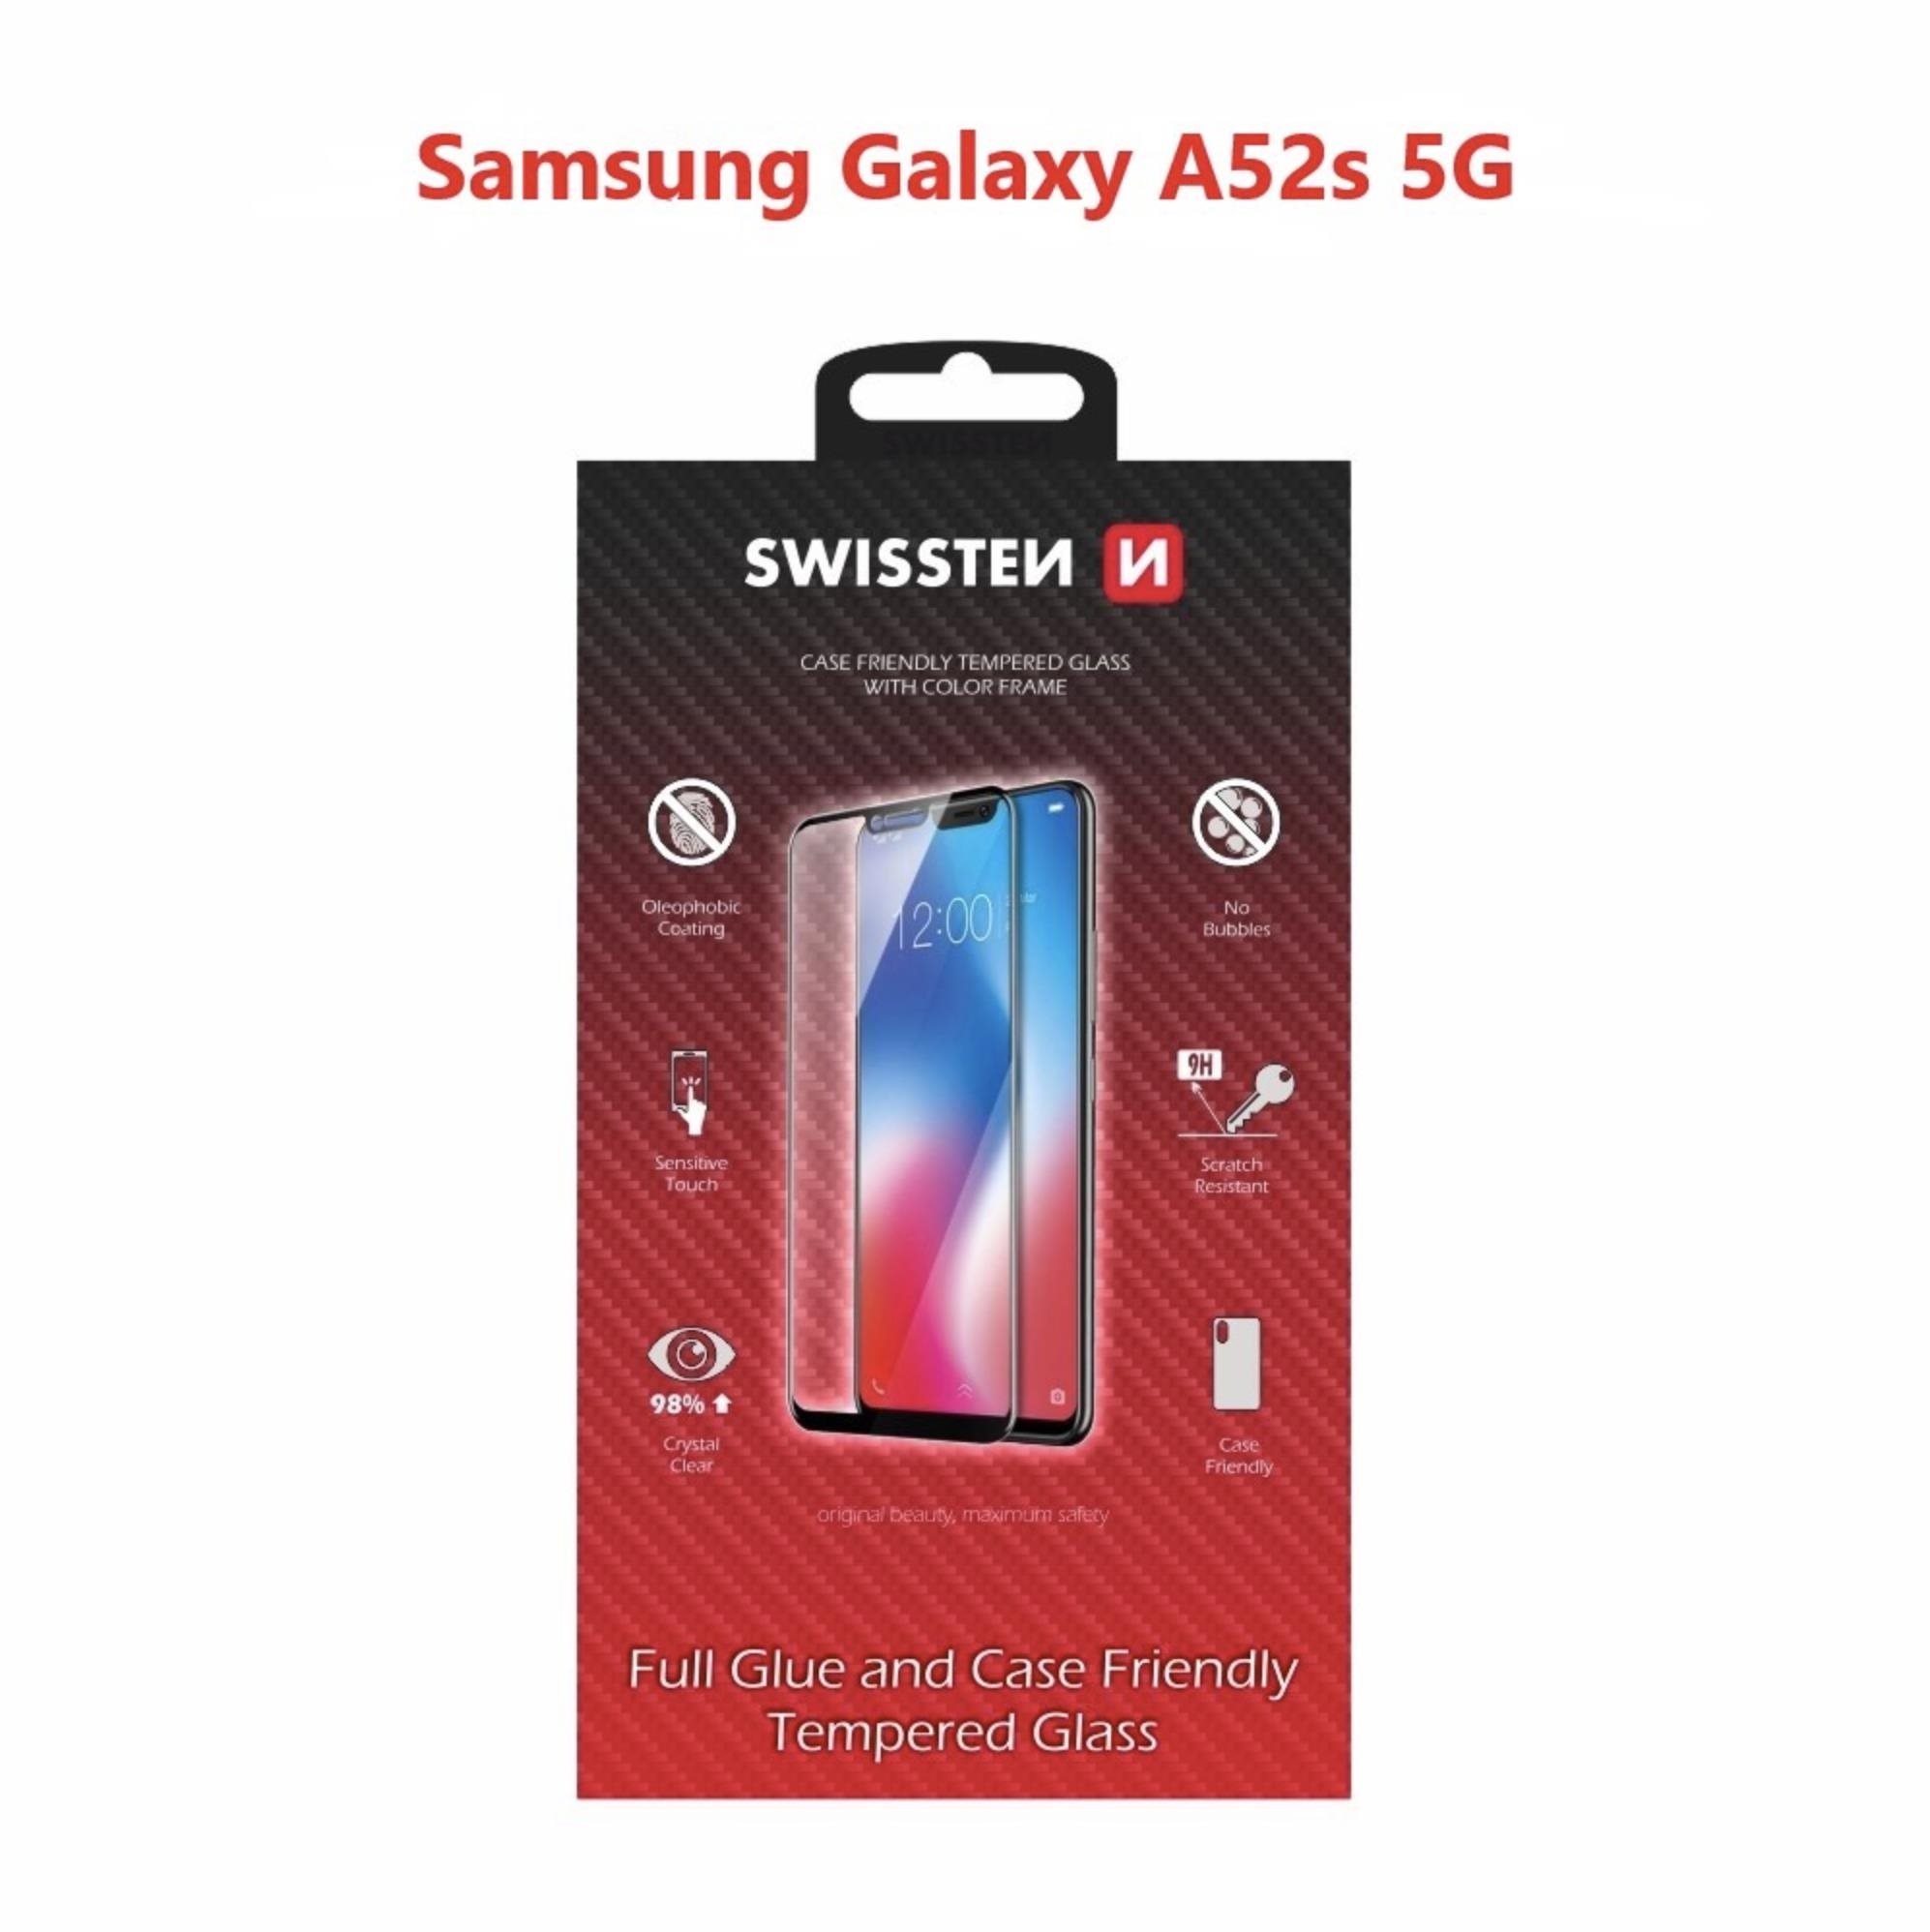 Üvegfólia Swissten Case Friendly a Samsung Galaxy A52s 5G készülékhez - fekete